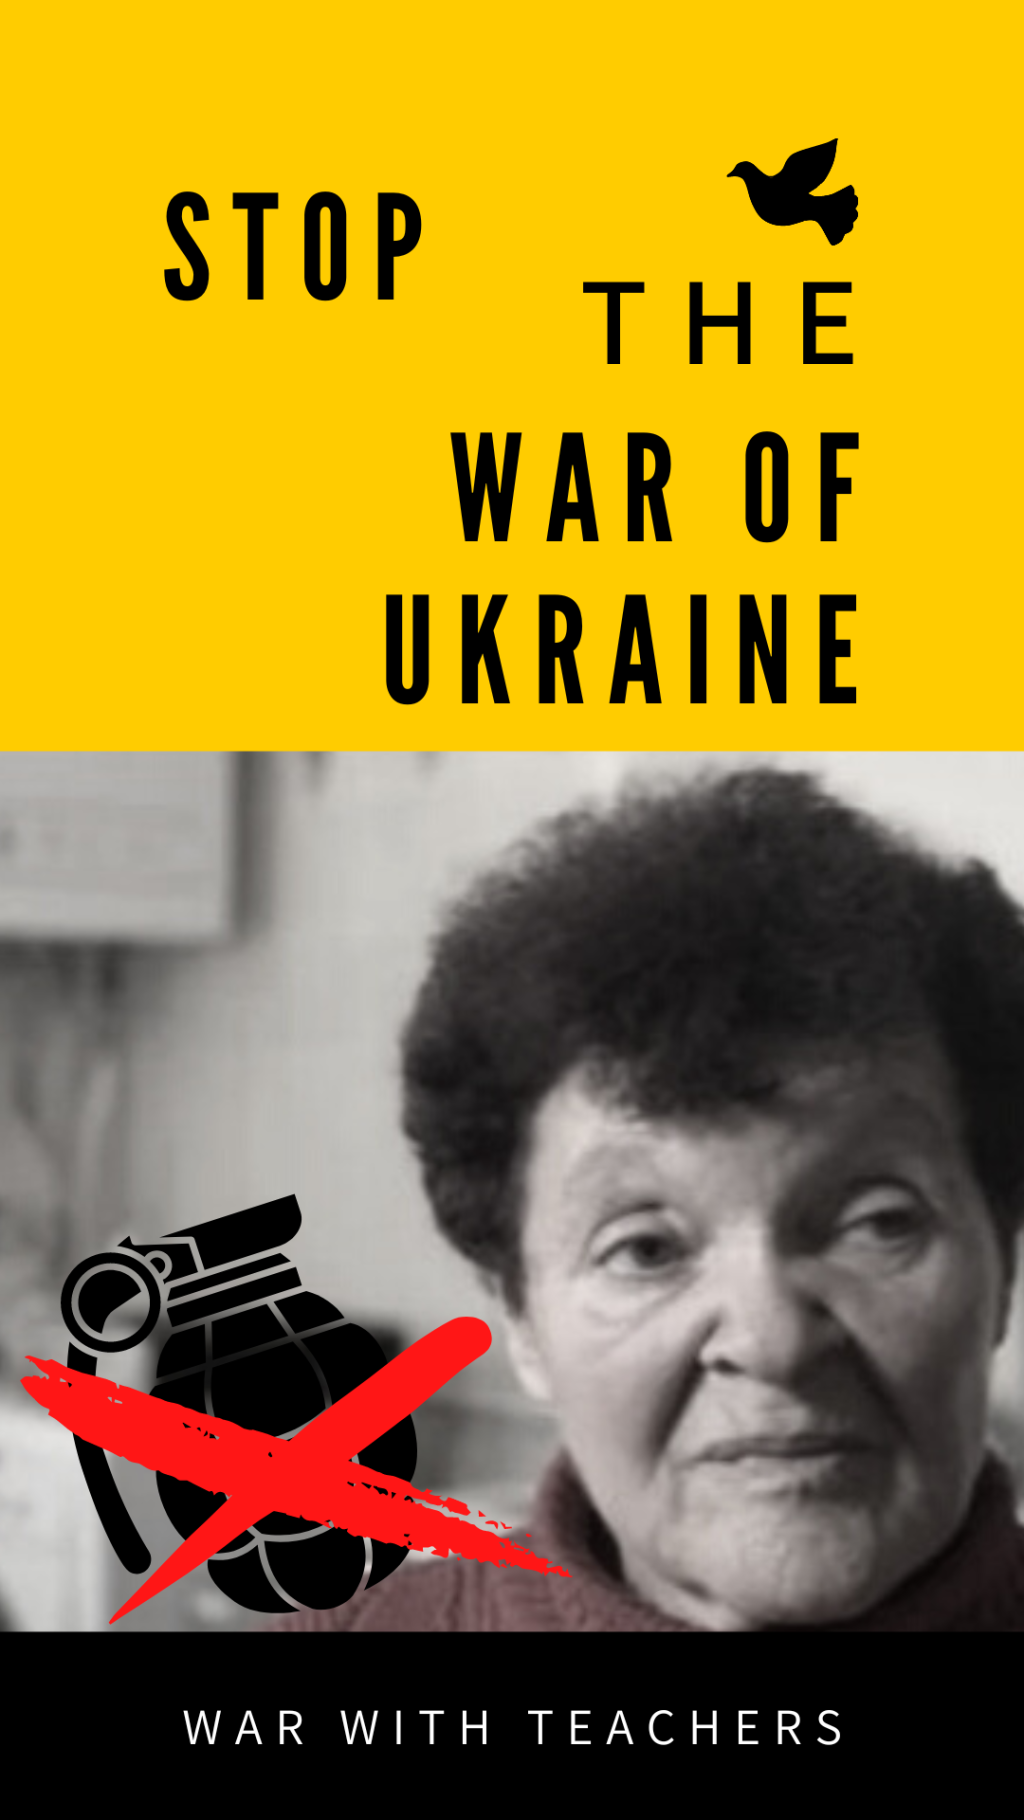 WAR OF UKRAINS